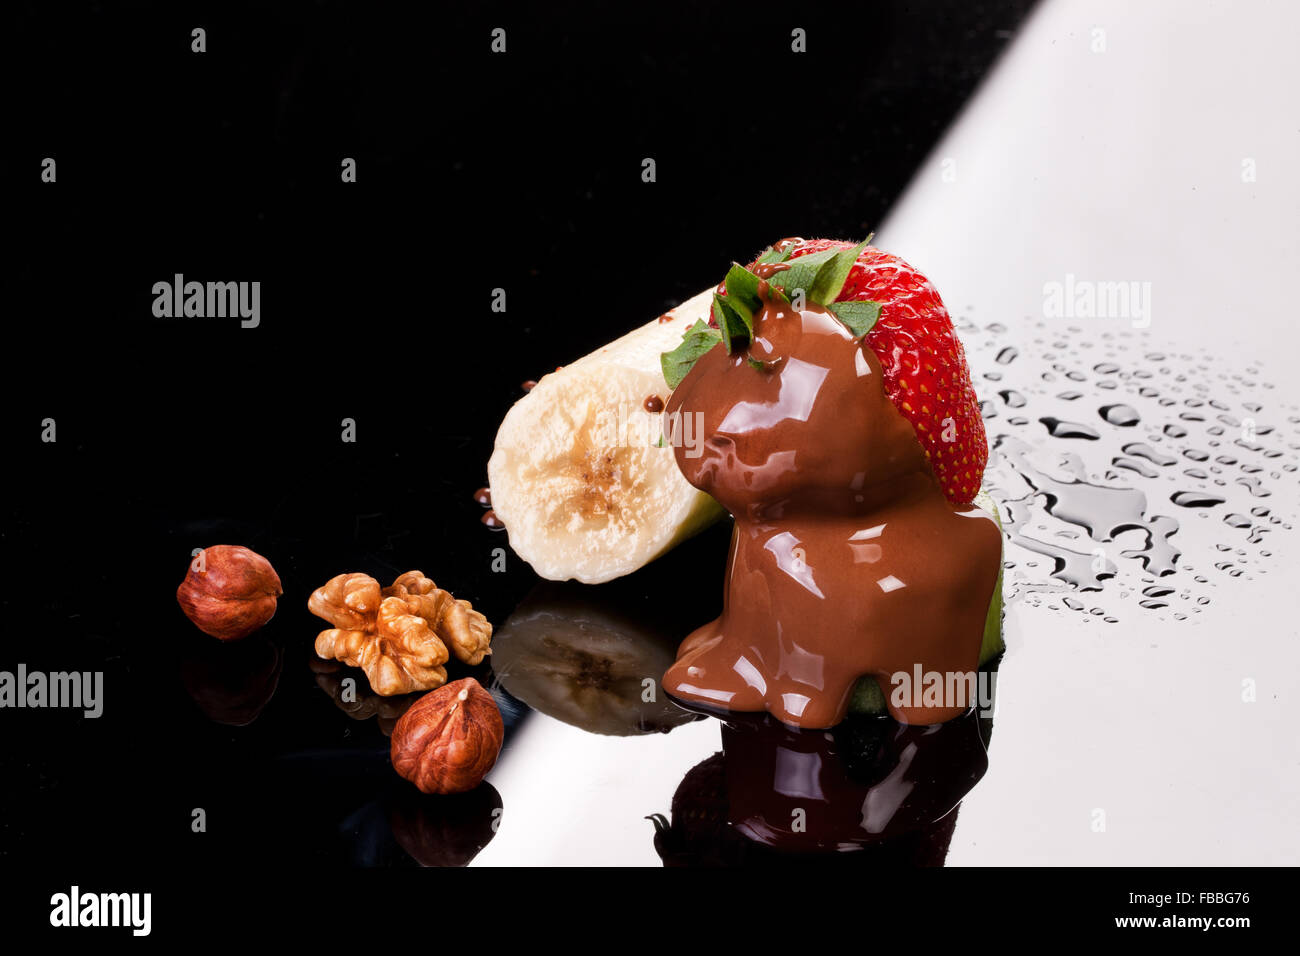 Berry Frucht essen frisch frische Glas Dessert Produkt Makro Nahaufnahme Erdbeer Kiwi Banane Hintergrund ungenießbaren Essen studio Stockfoto